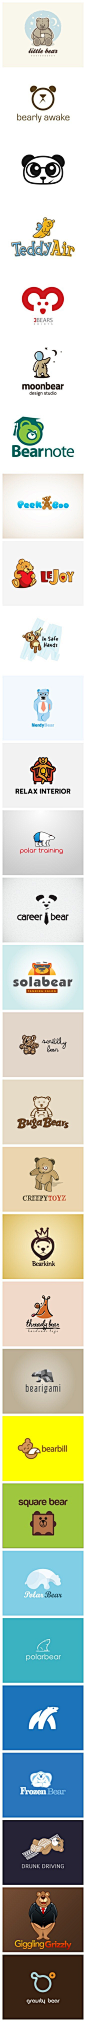 30个以熊为元素的logo设计. #Logo#